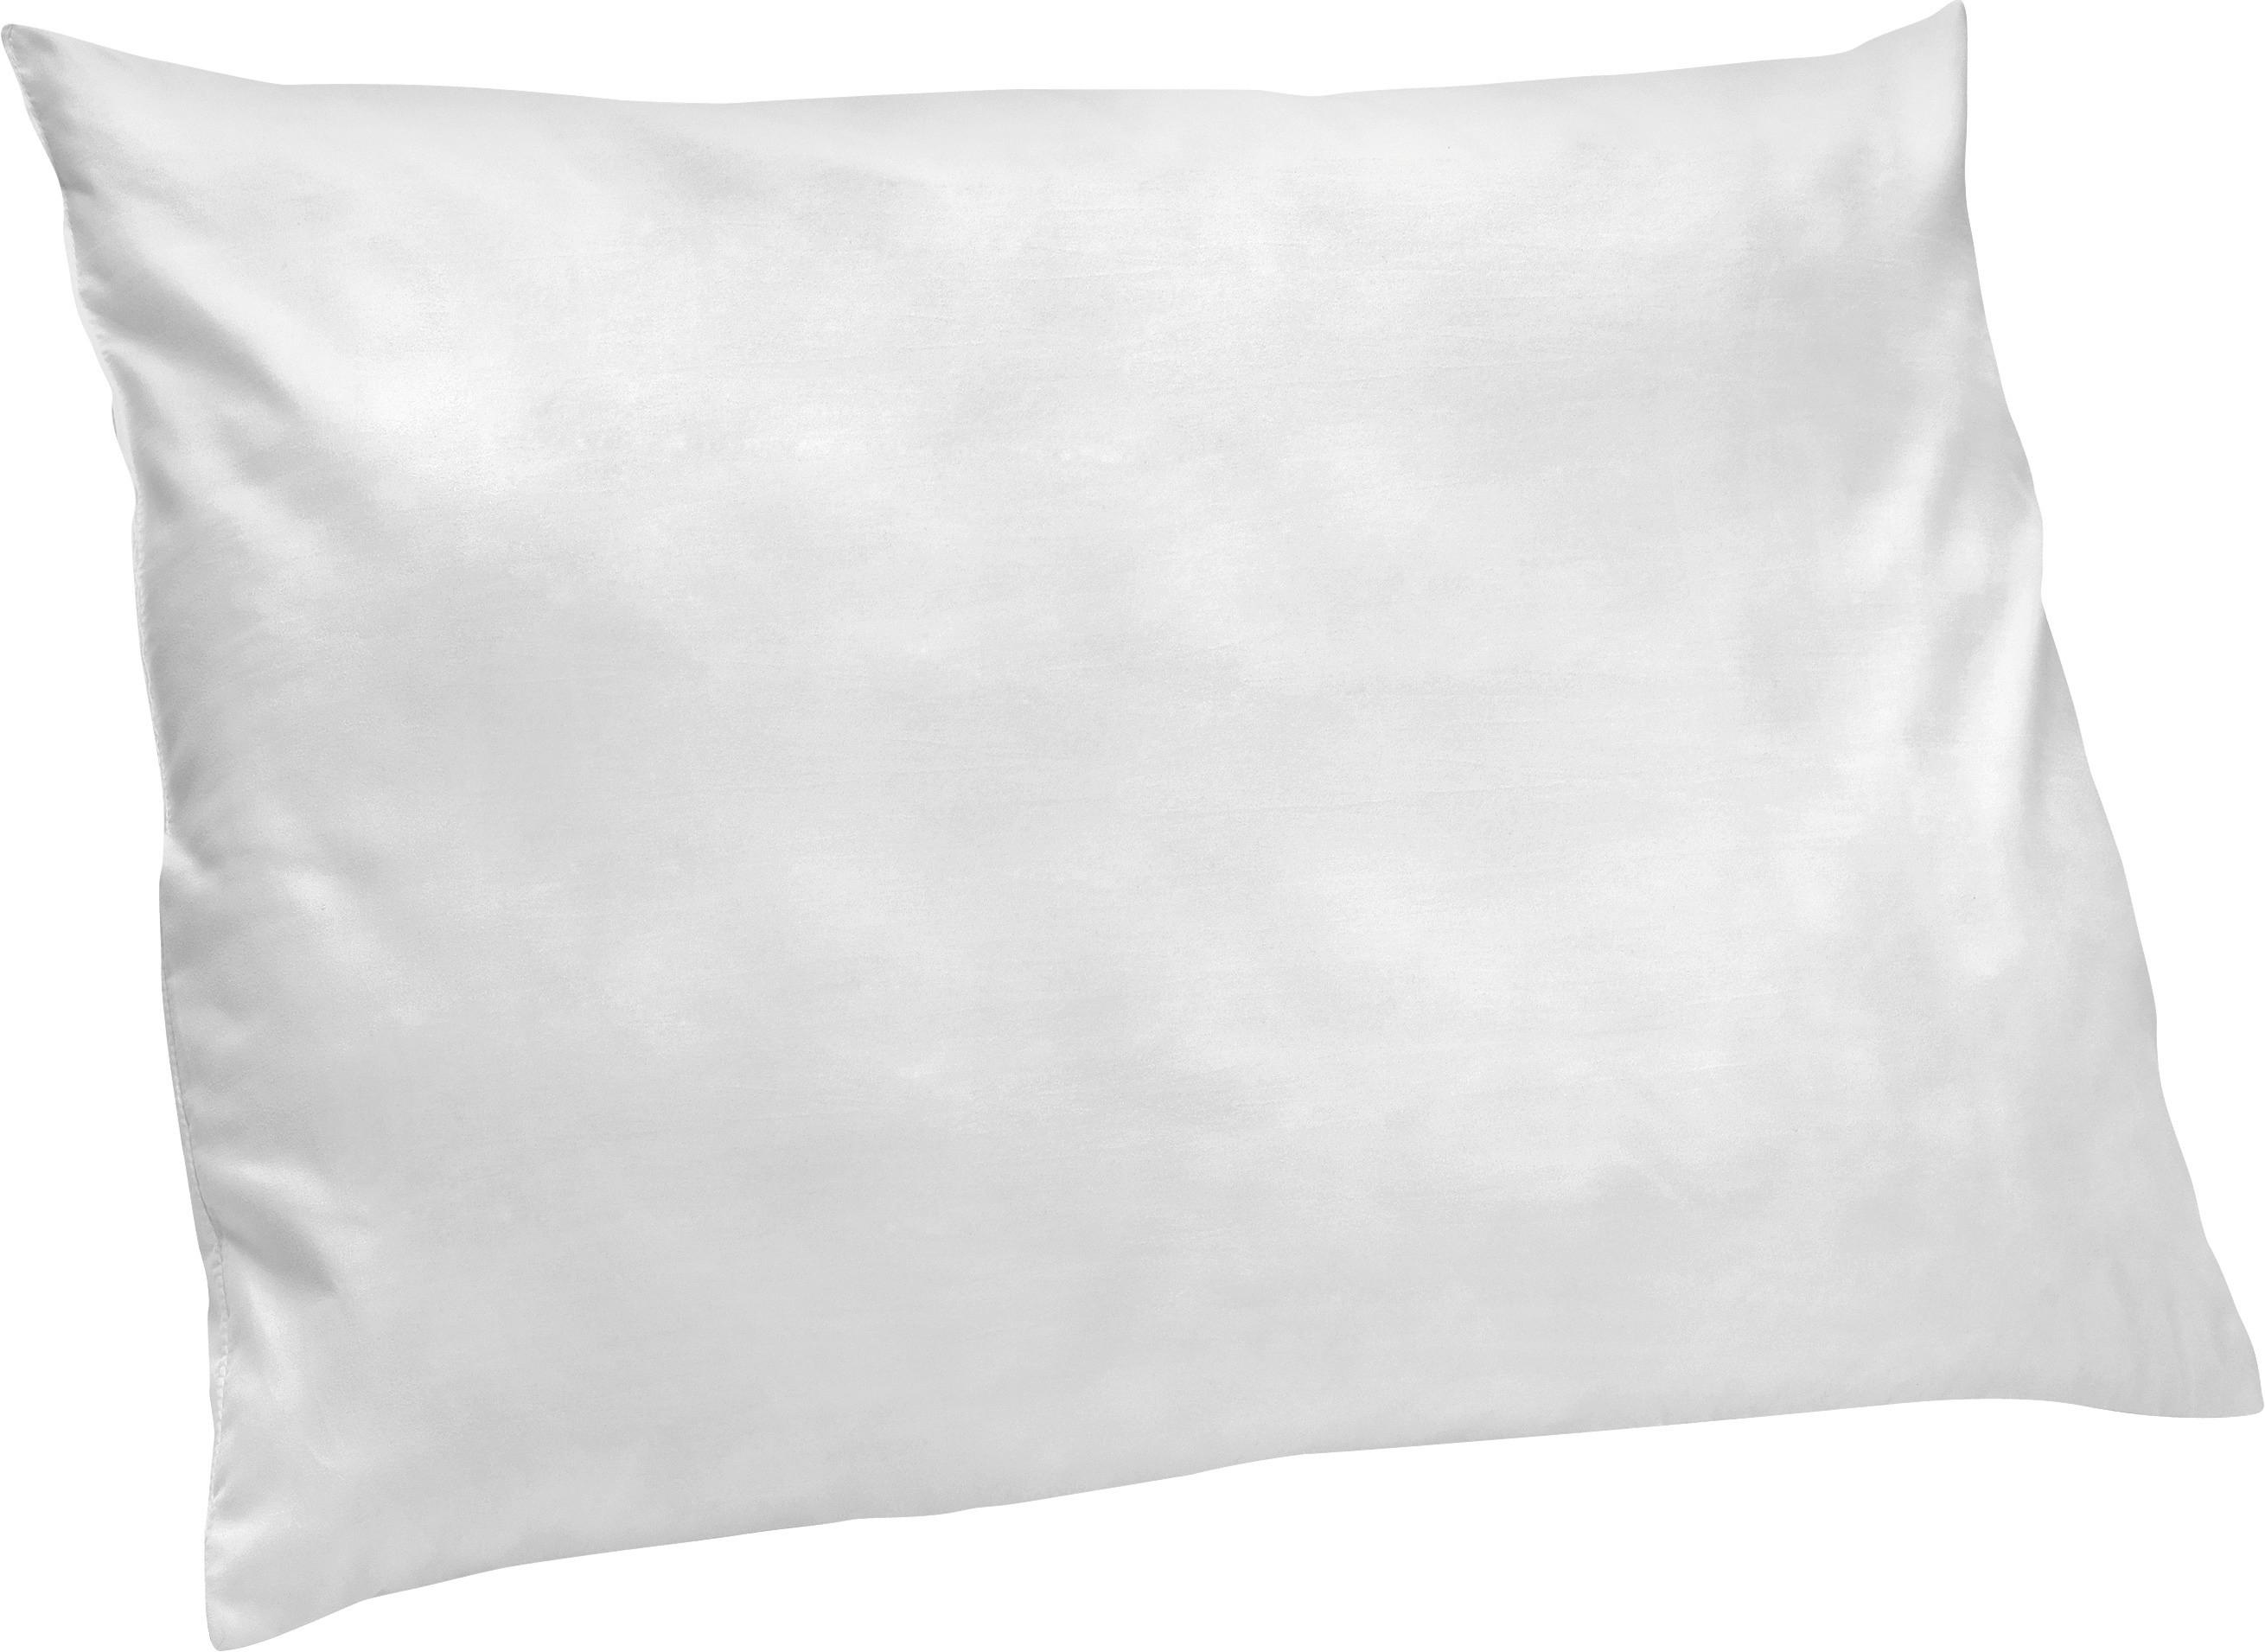 Polster White 70x90 cm Füllung: Polyester - Weiß, KONVENTIONELL, Textil (70/90cm) - Primatex